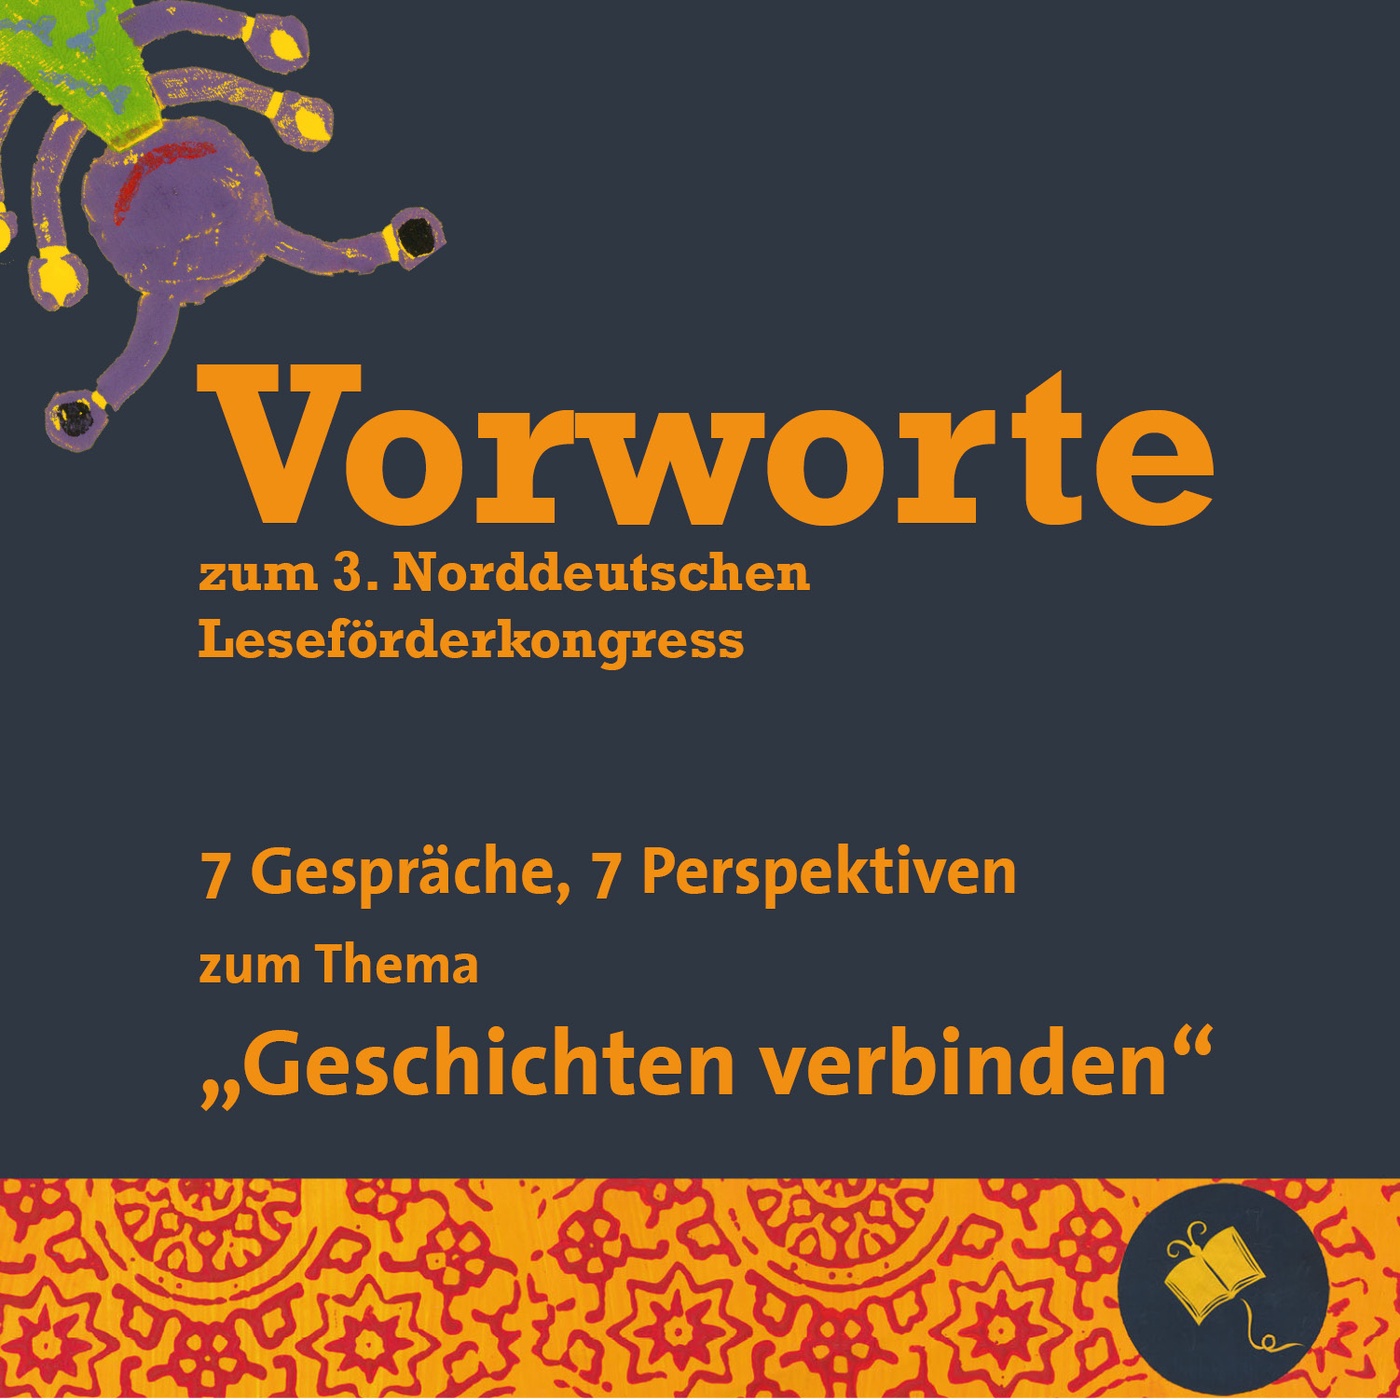 Vorwort # 5 zum norddeutschen Leseförderkongress